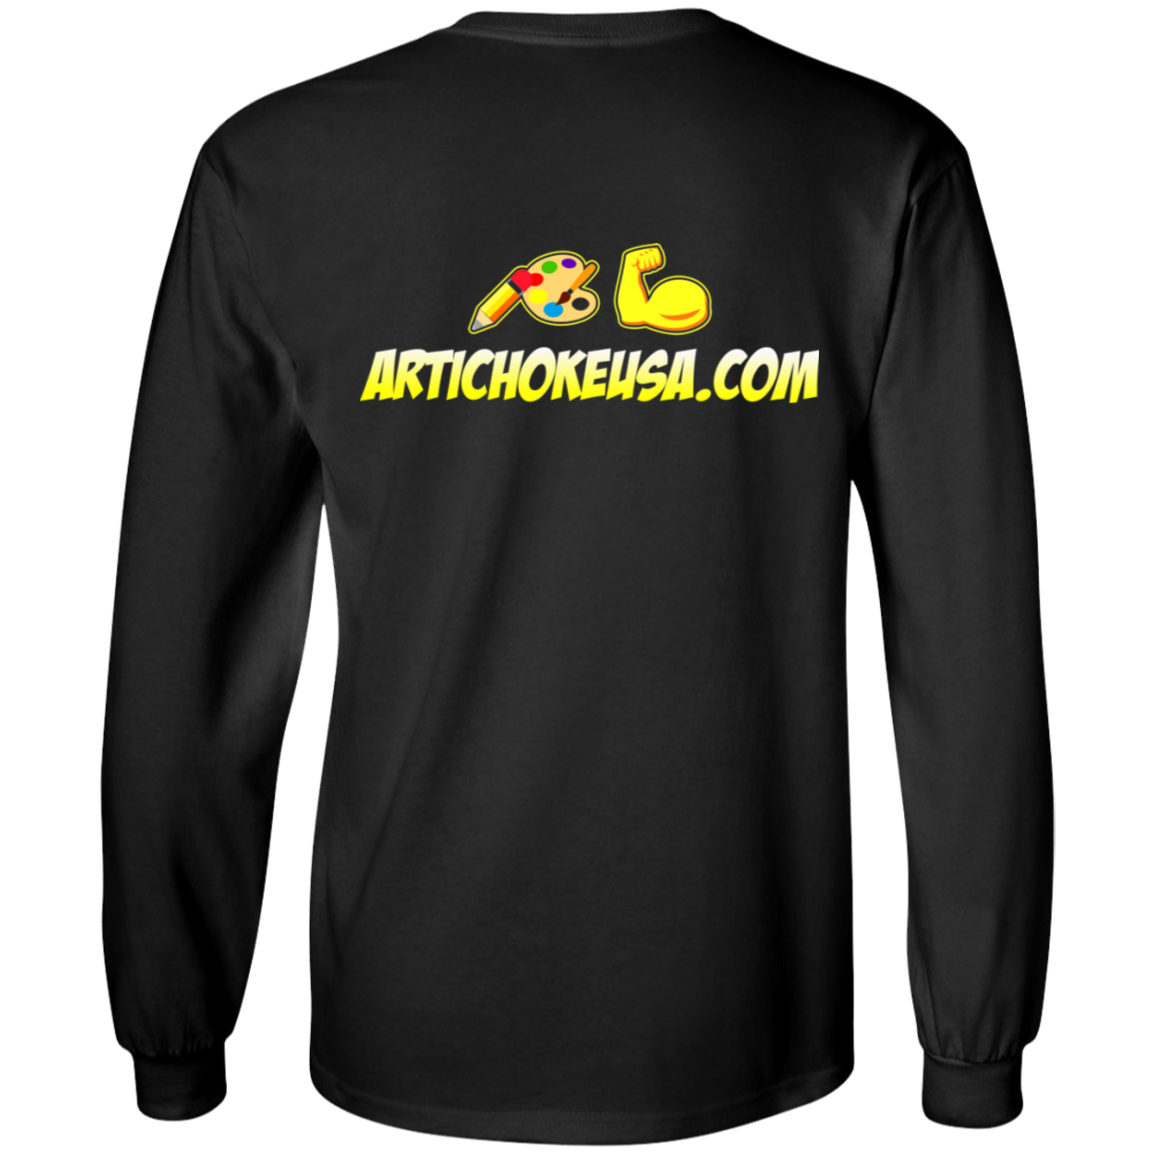 ArtichokeUSA Custom Design. Art Strong. LS Ultra Cotton T-Shirt